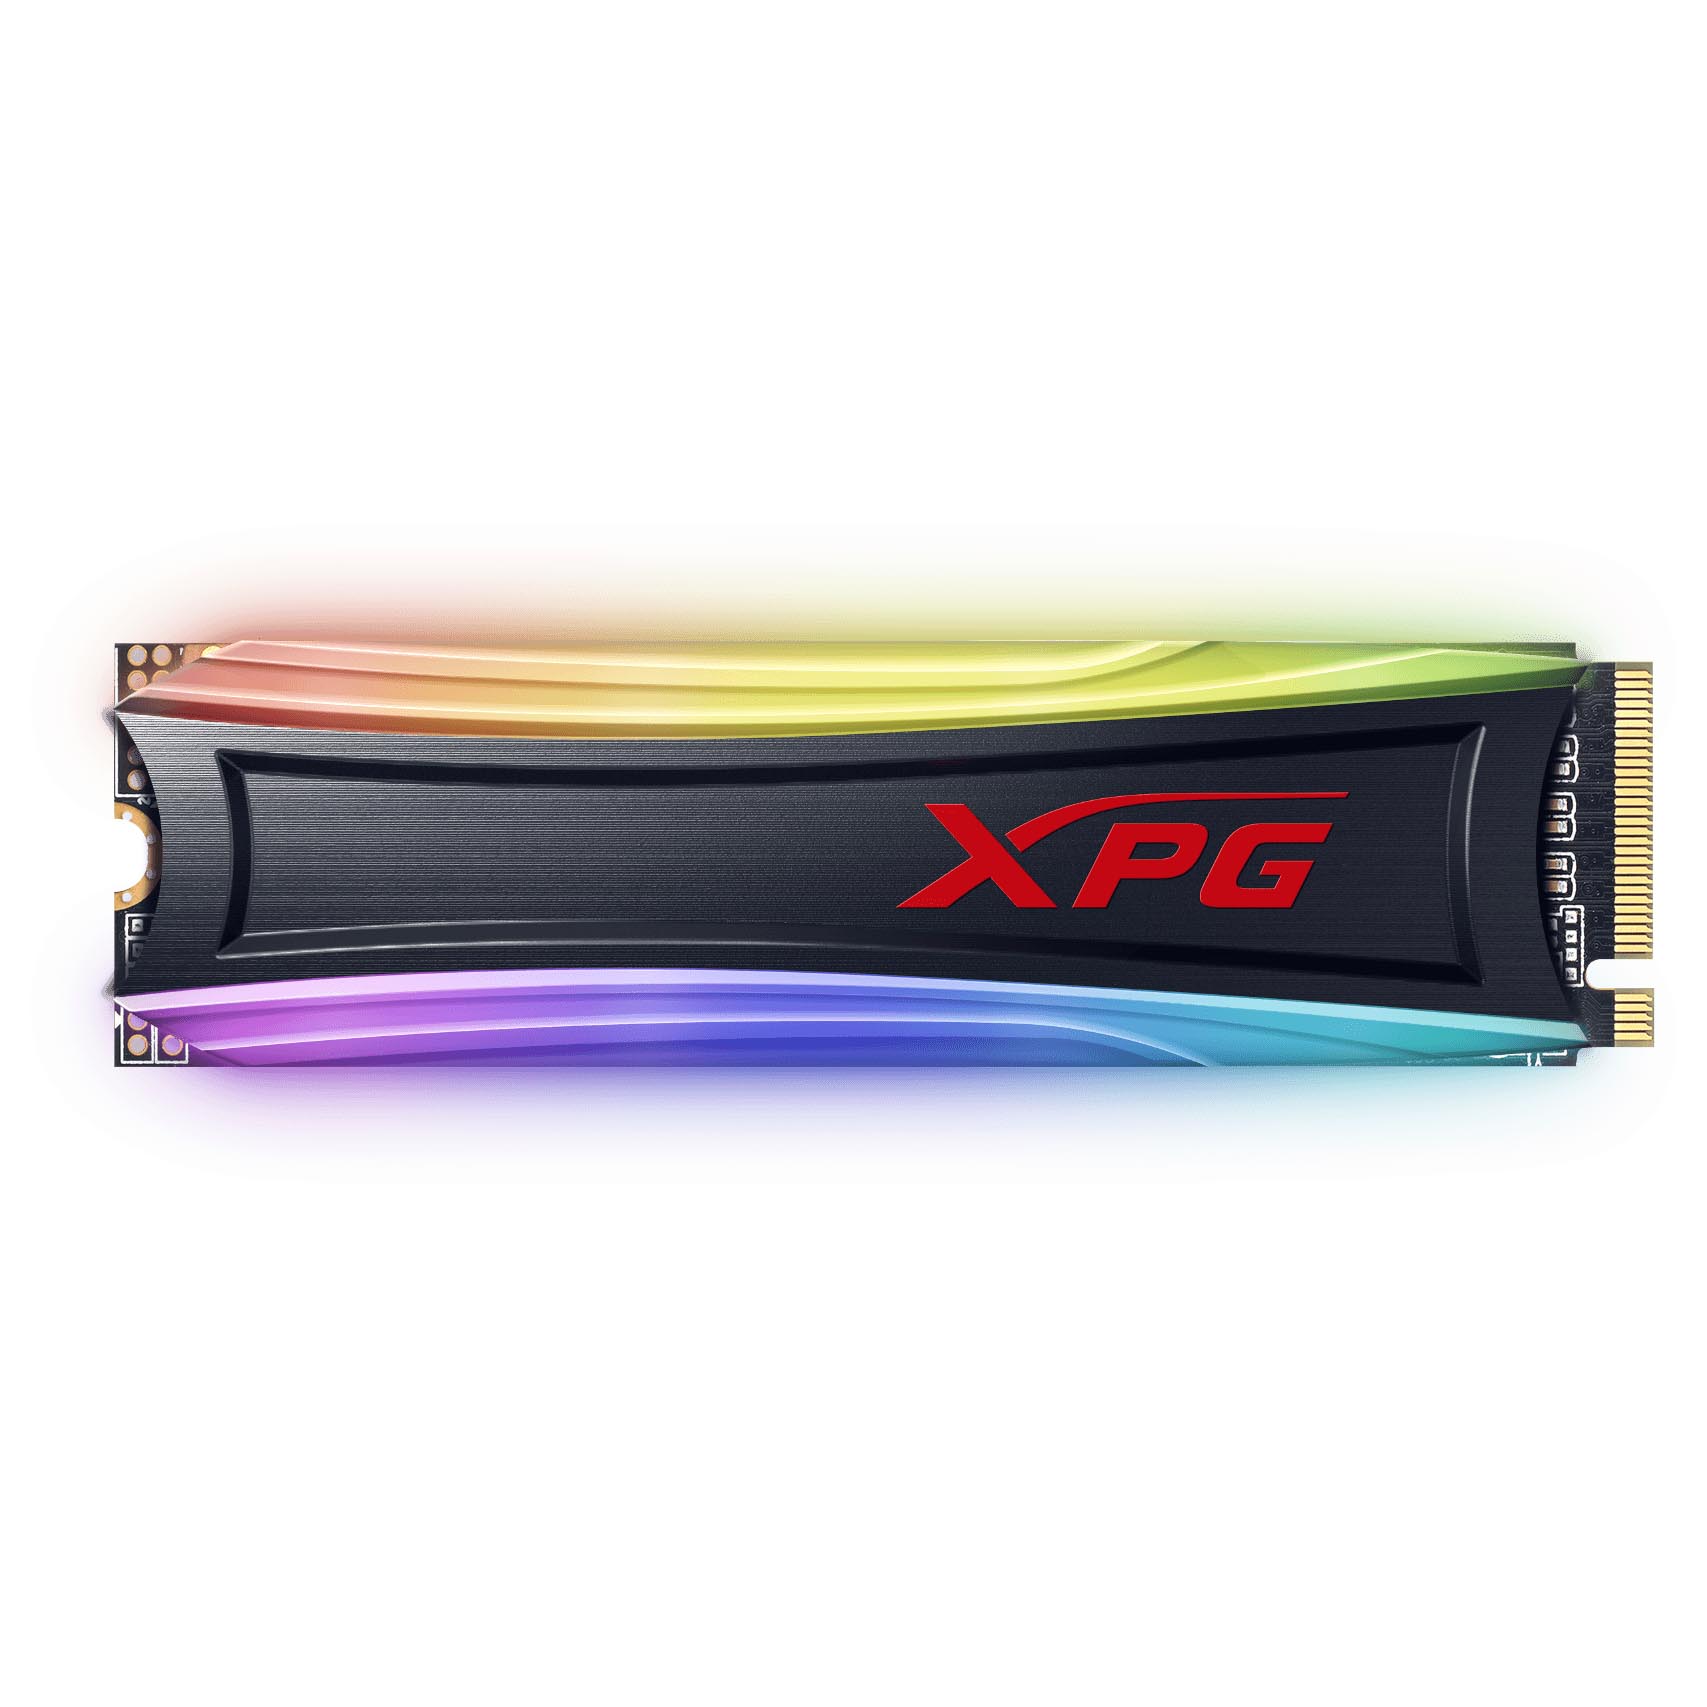 Внутренний твердотельный накопитель Adata XPG Spectrix S40G RGB, AS40G-256GT-C, 256Гб, М.2 2280 твердотельный накопитель a data xpg spectrix s40g rgb 1tb as40g 1tt c